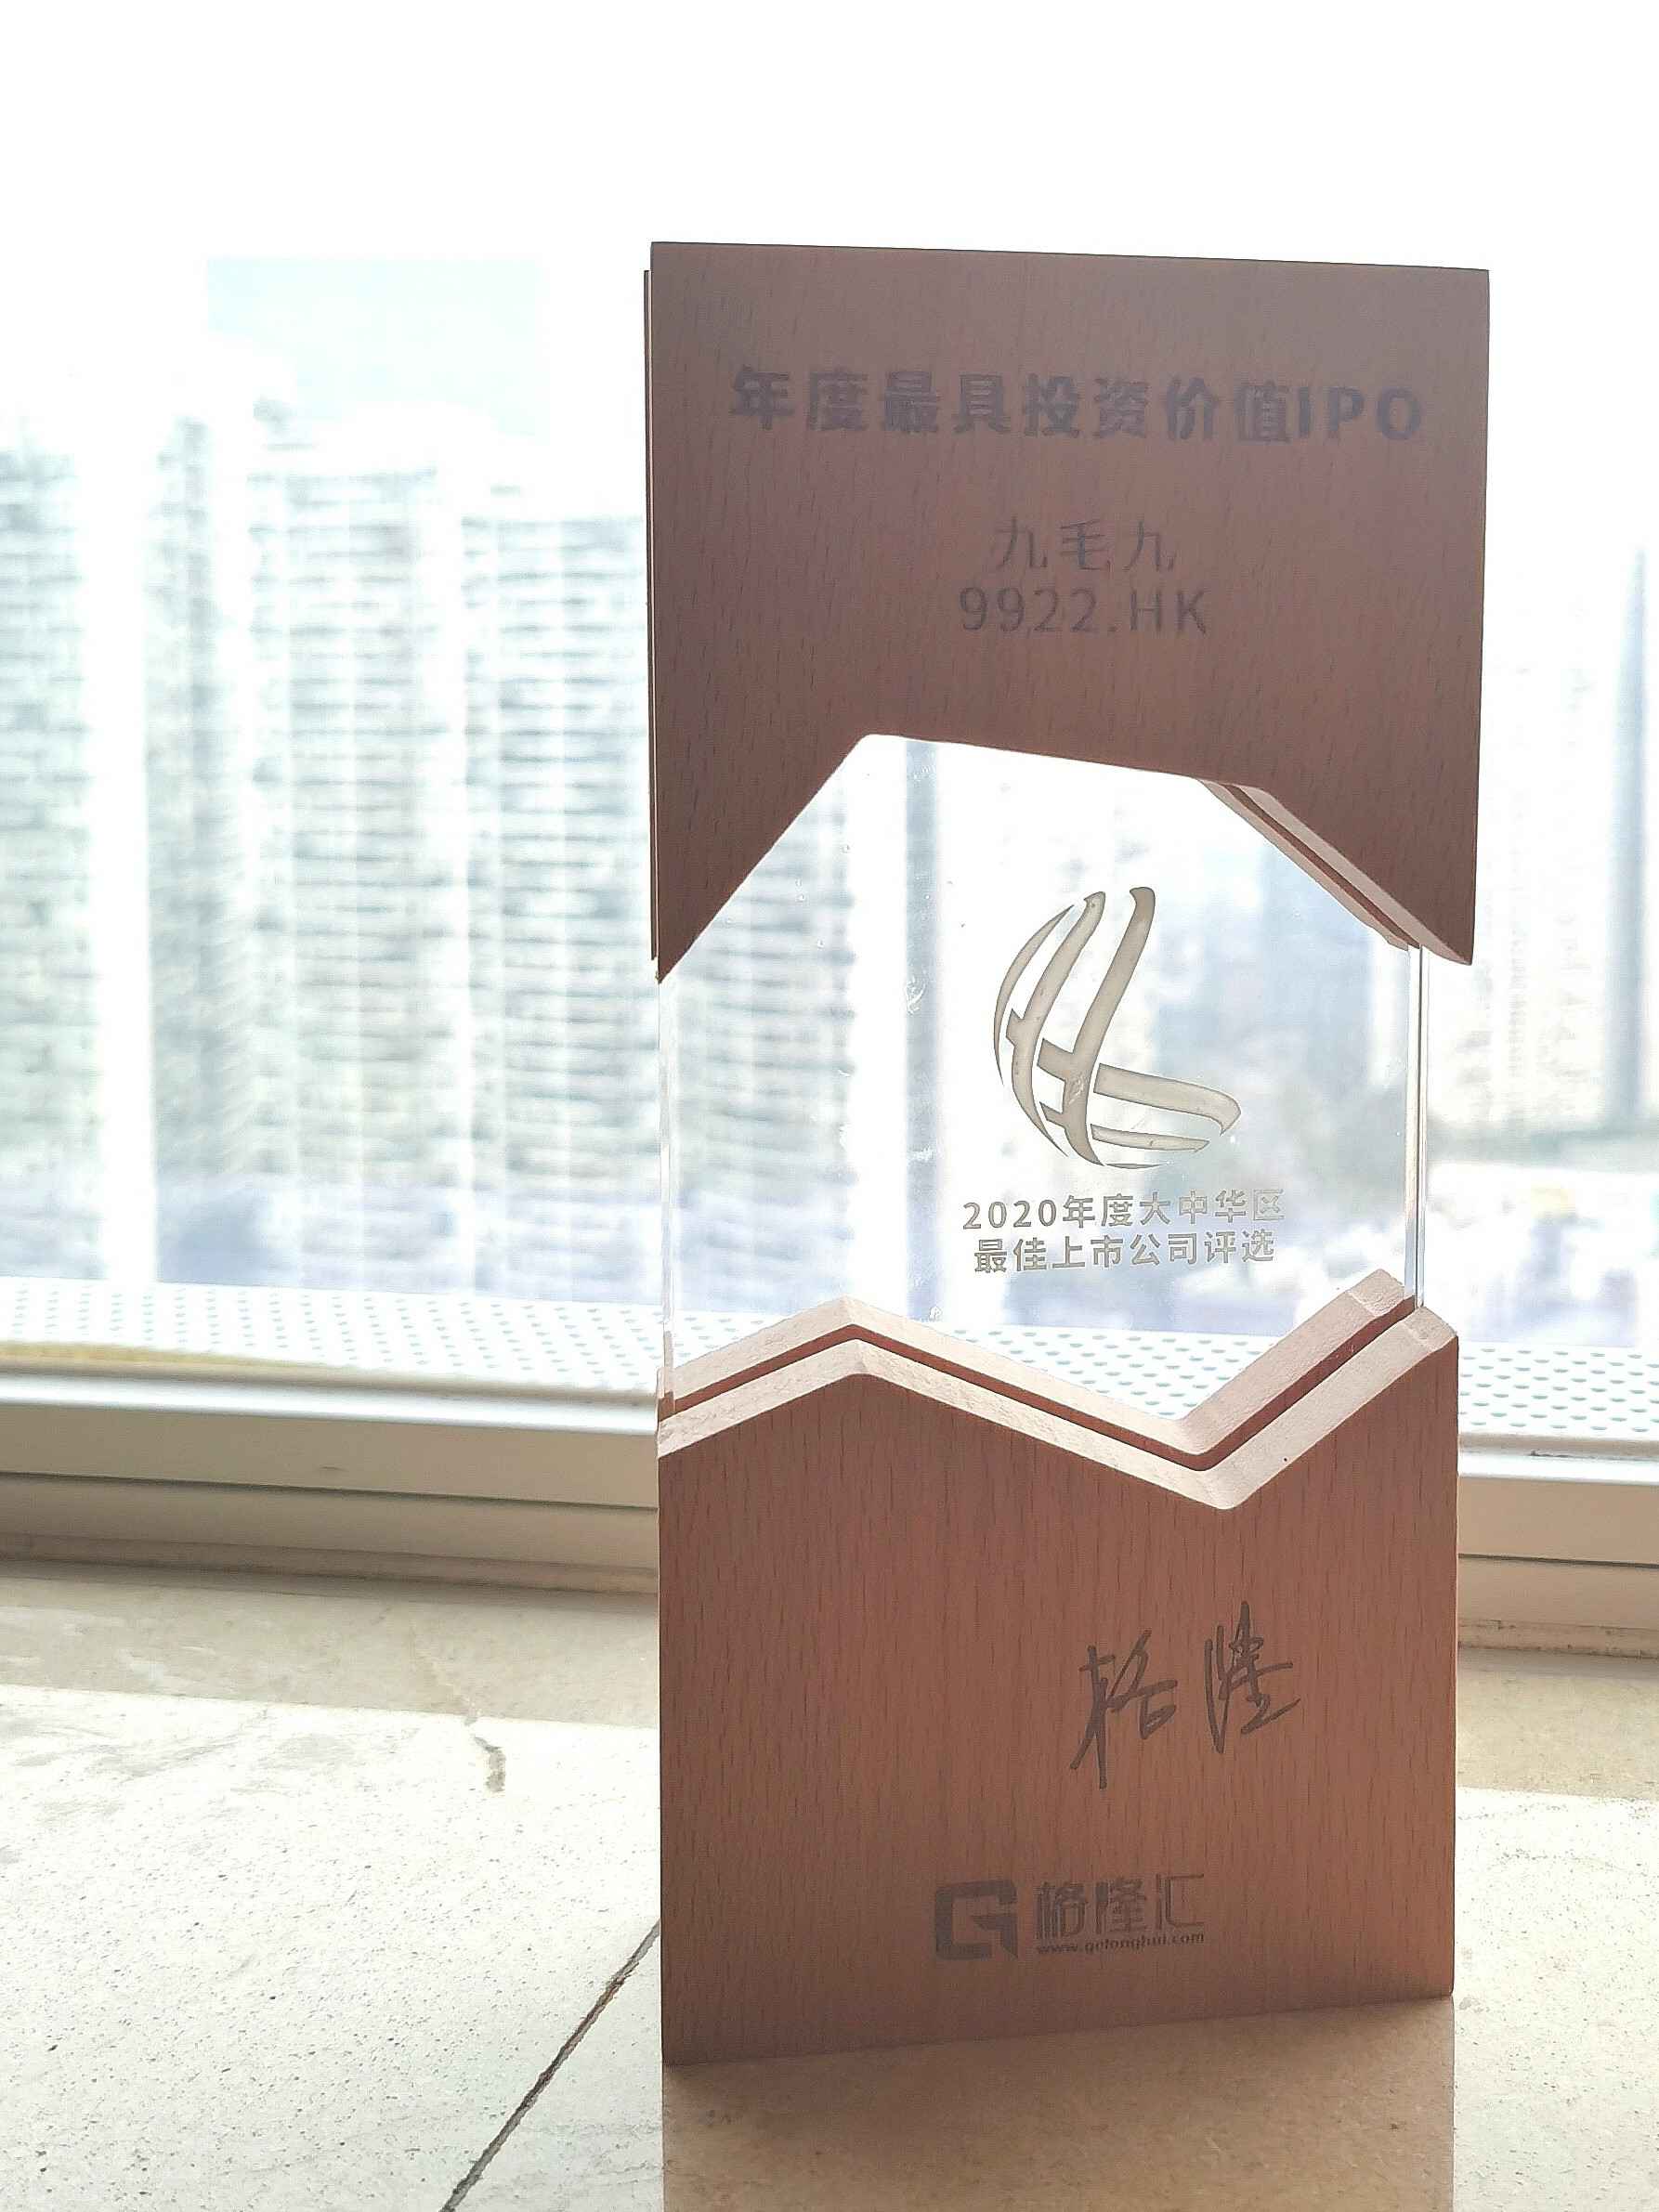 皇冠288880手机版(中国)有限公司荣获“2020年度最具投资价值IPO”